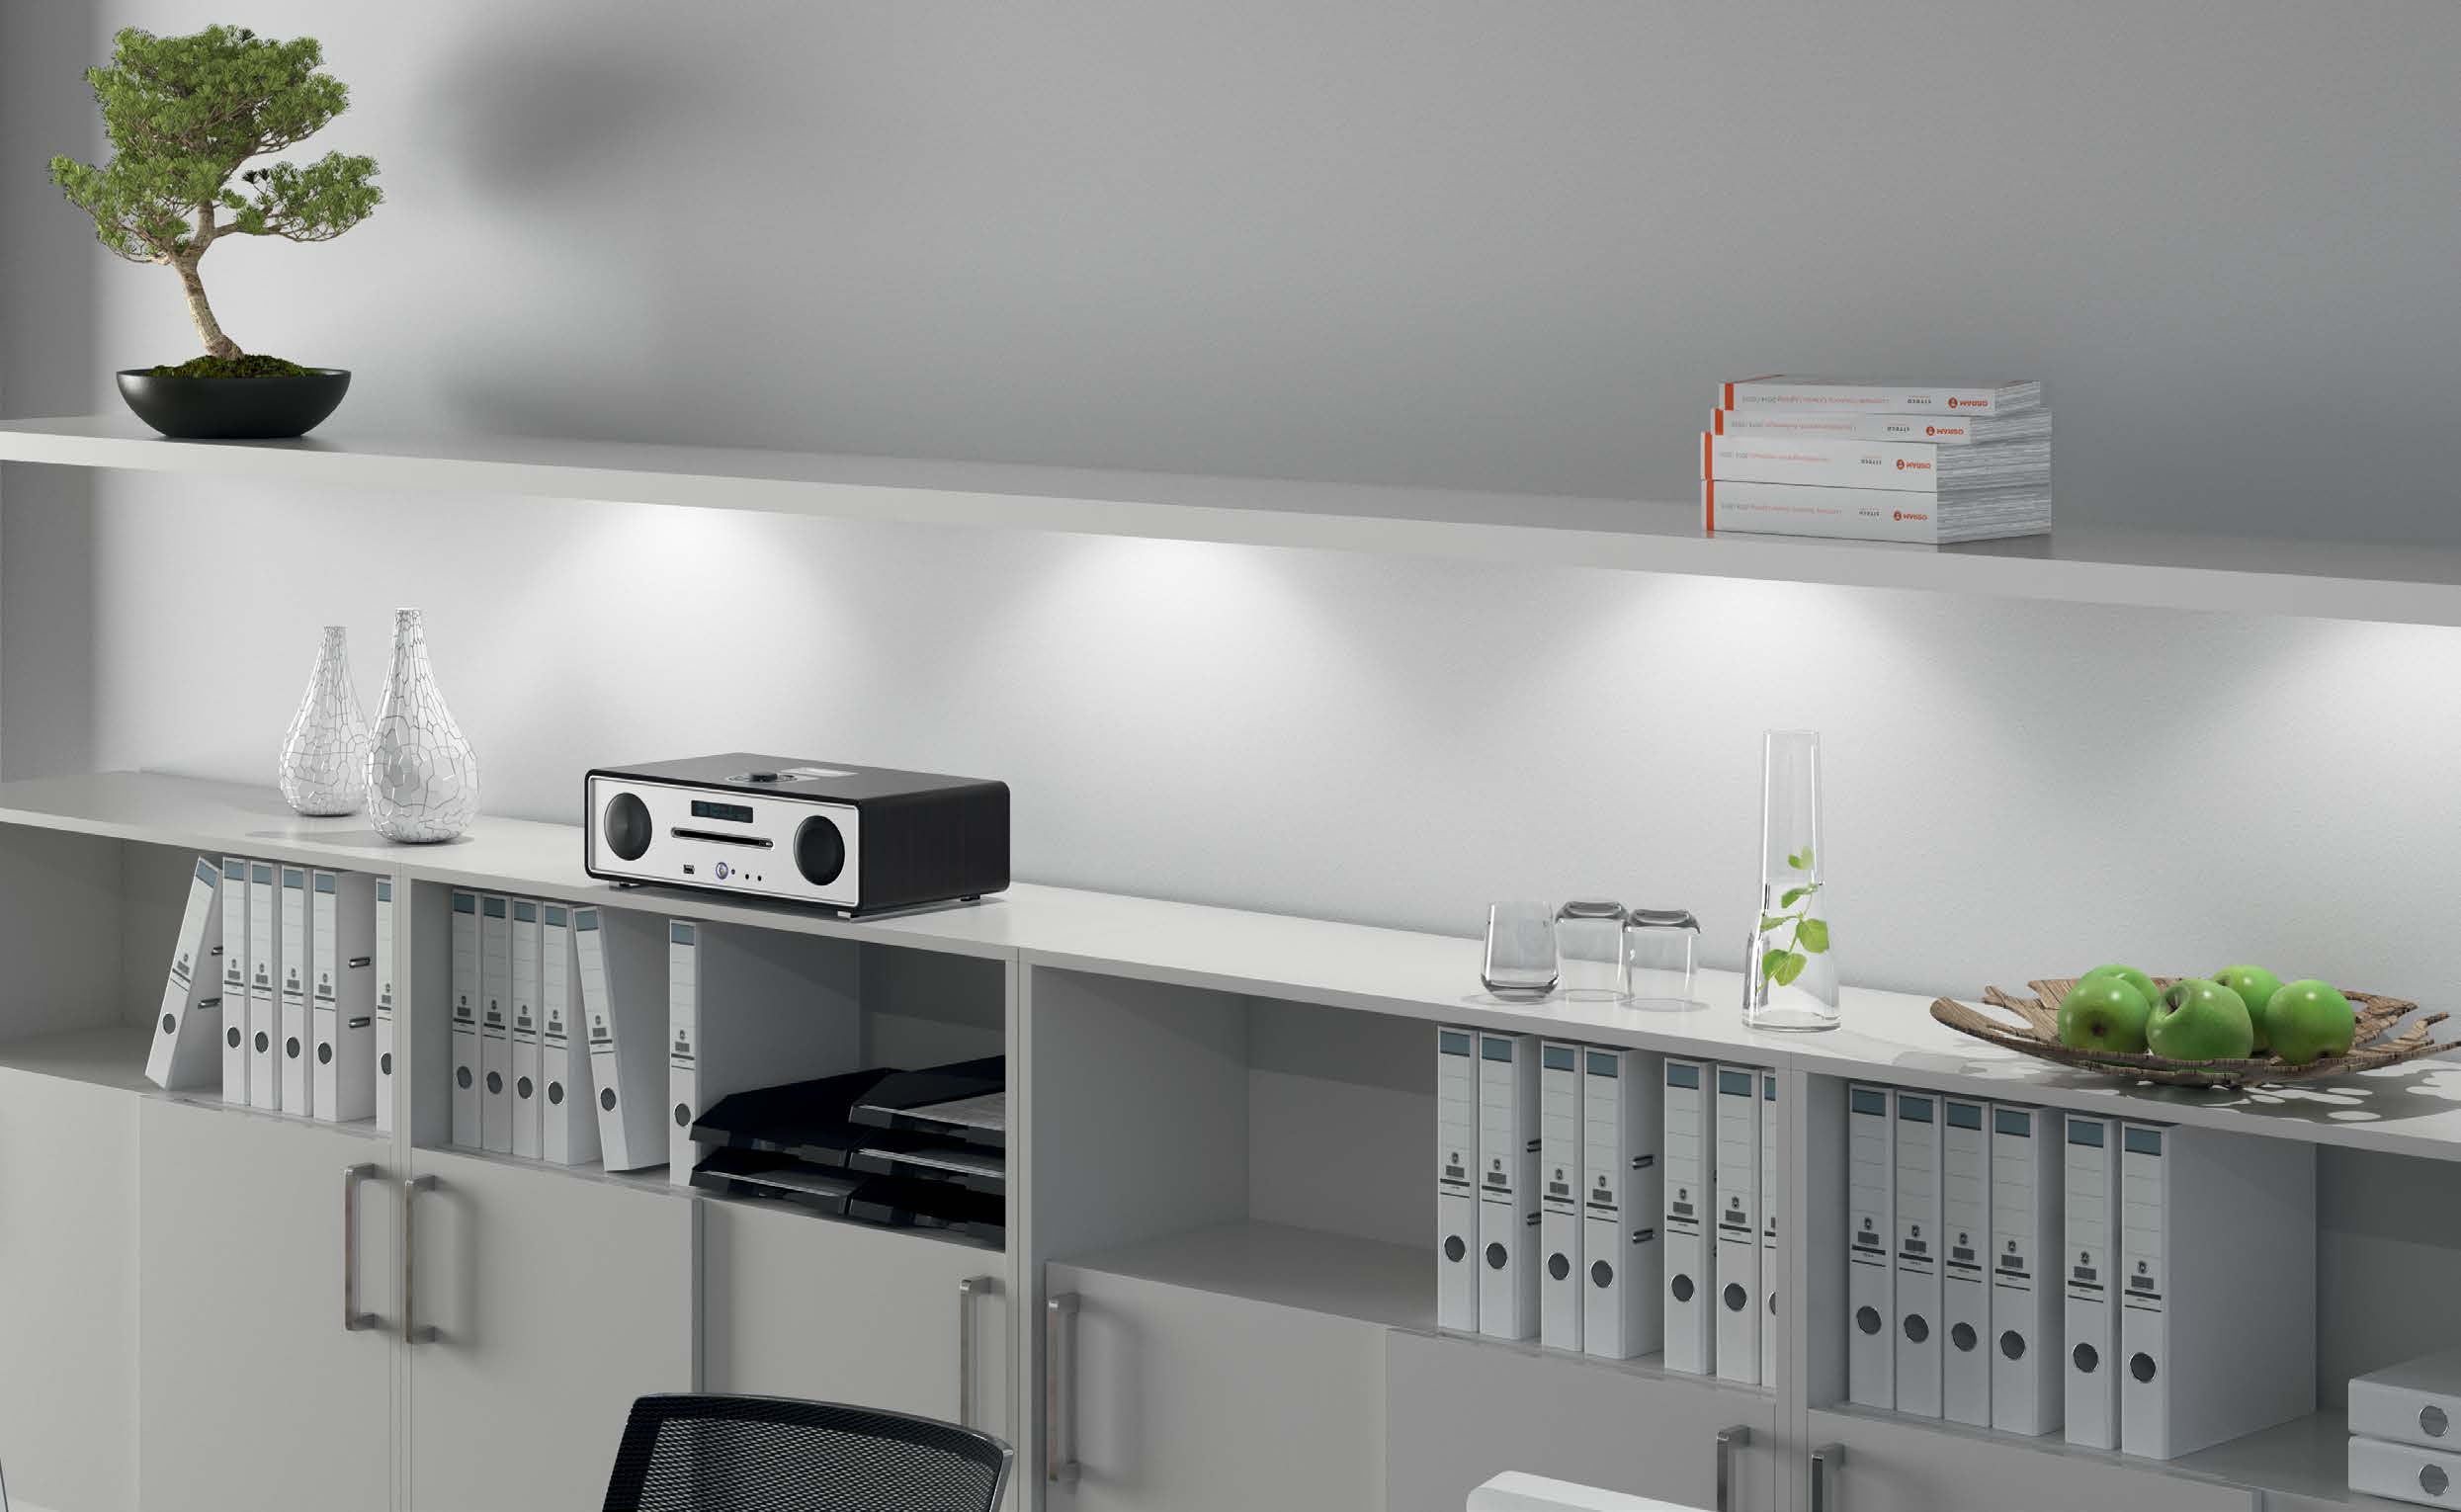 s OSRAM Luminárias VANCE DOWNLIGHT S É uma opção sofisticada para iluminação de ambientes corporativos e residenciais.